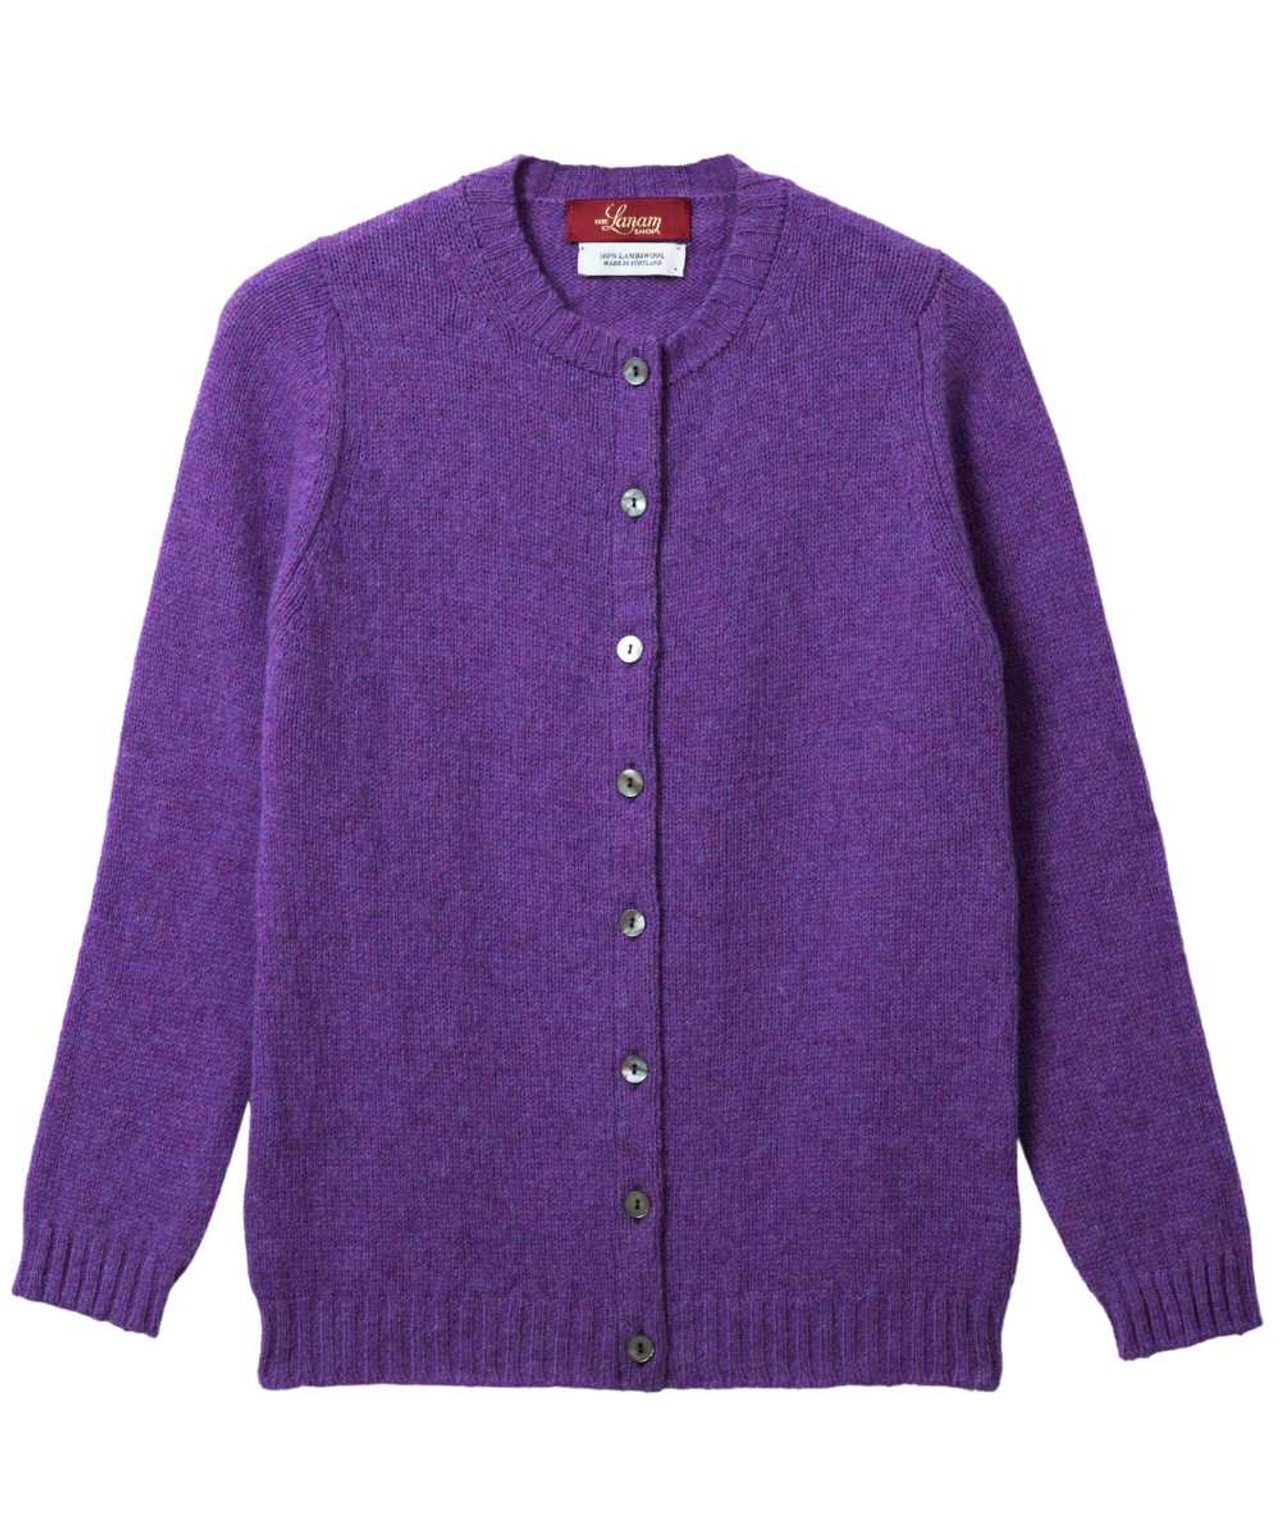 Women's Shetland Wool Sweaters: Shetland Wool Crew Neck Cardigan ...